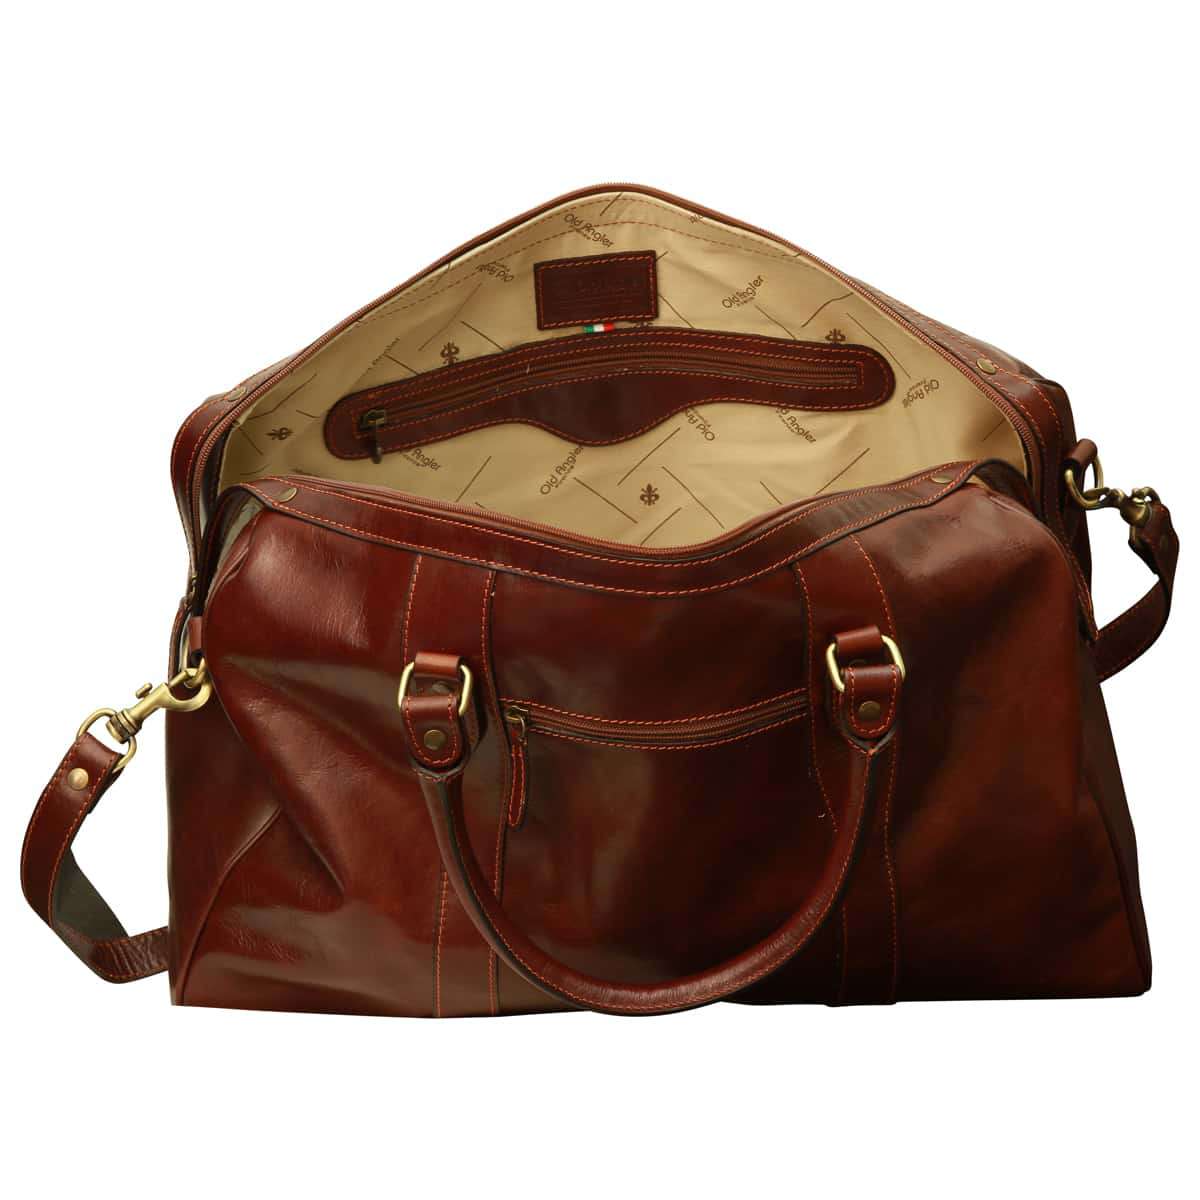 Travel Bag with shoulder strap - Brown | 108805MA UK | Old Angler Firenze